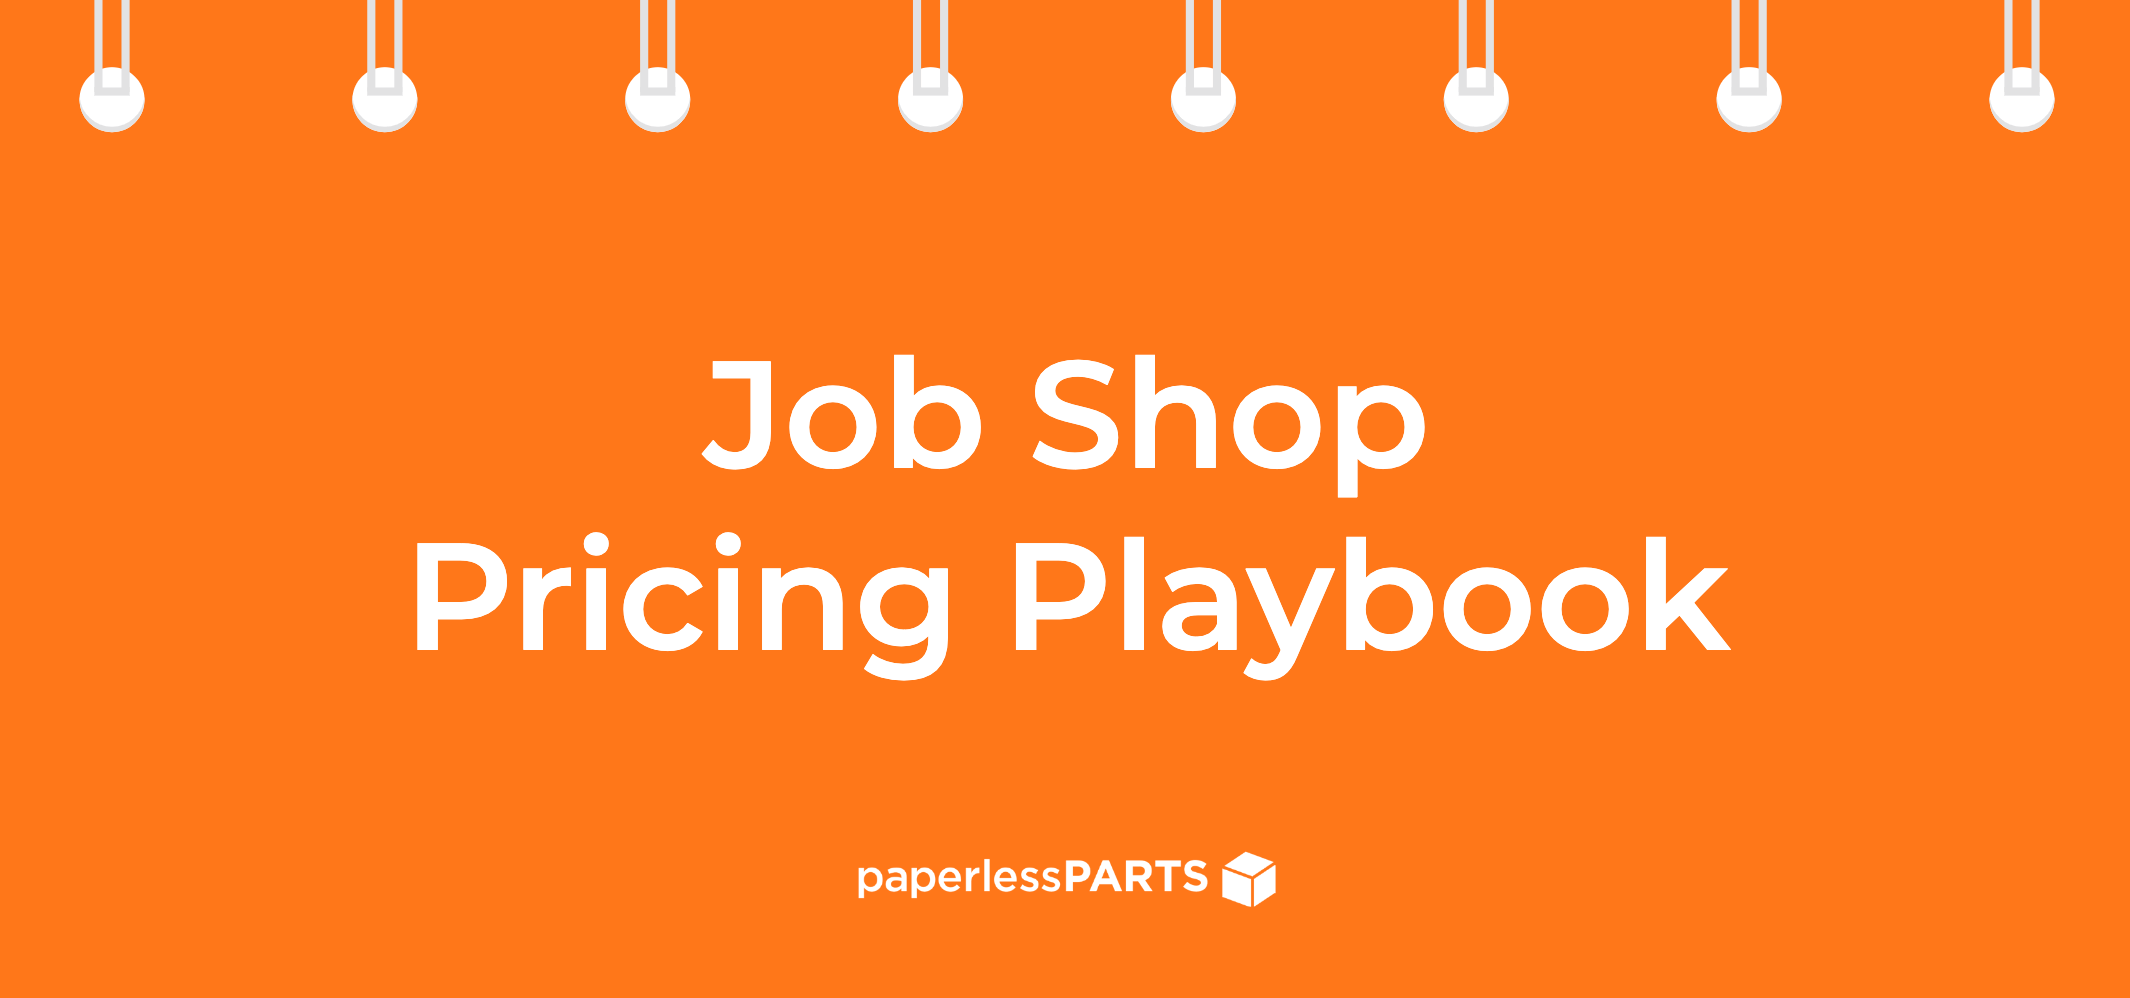 Job Shop Pricing Playbook